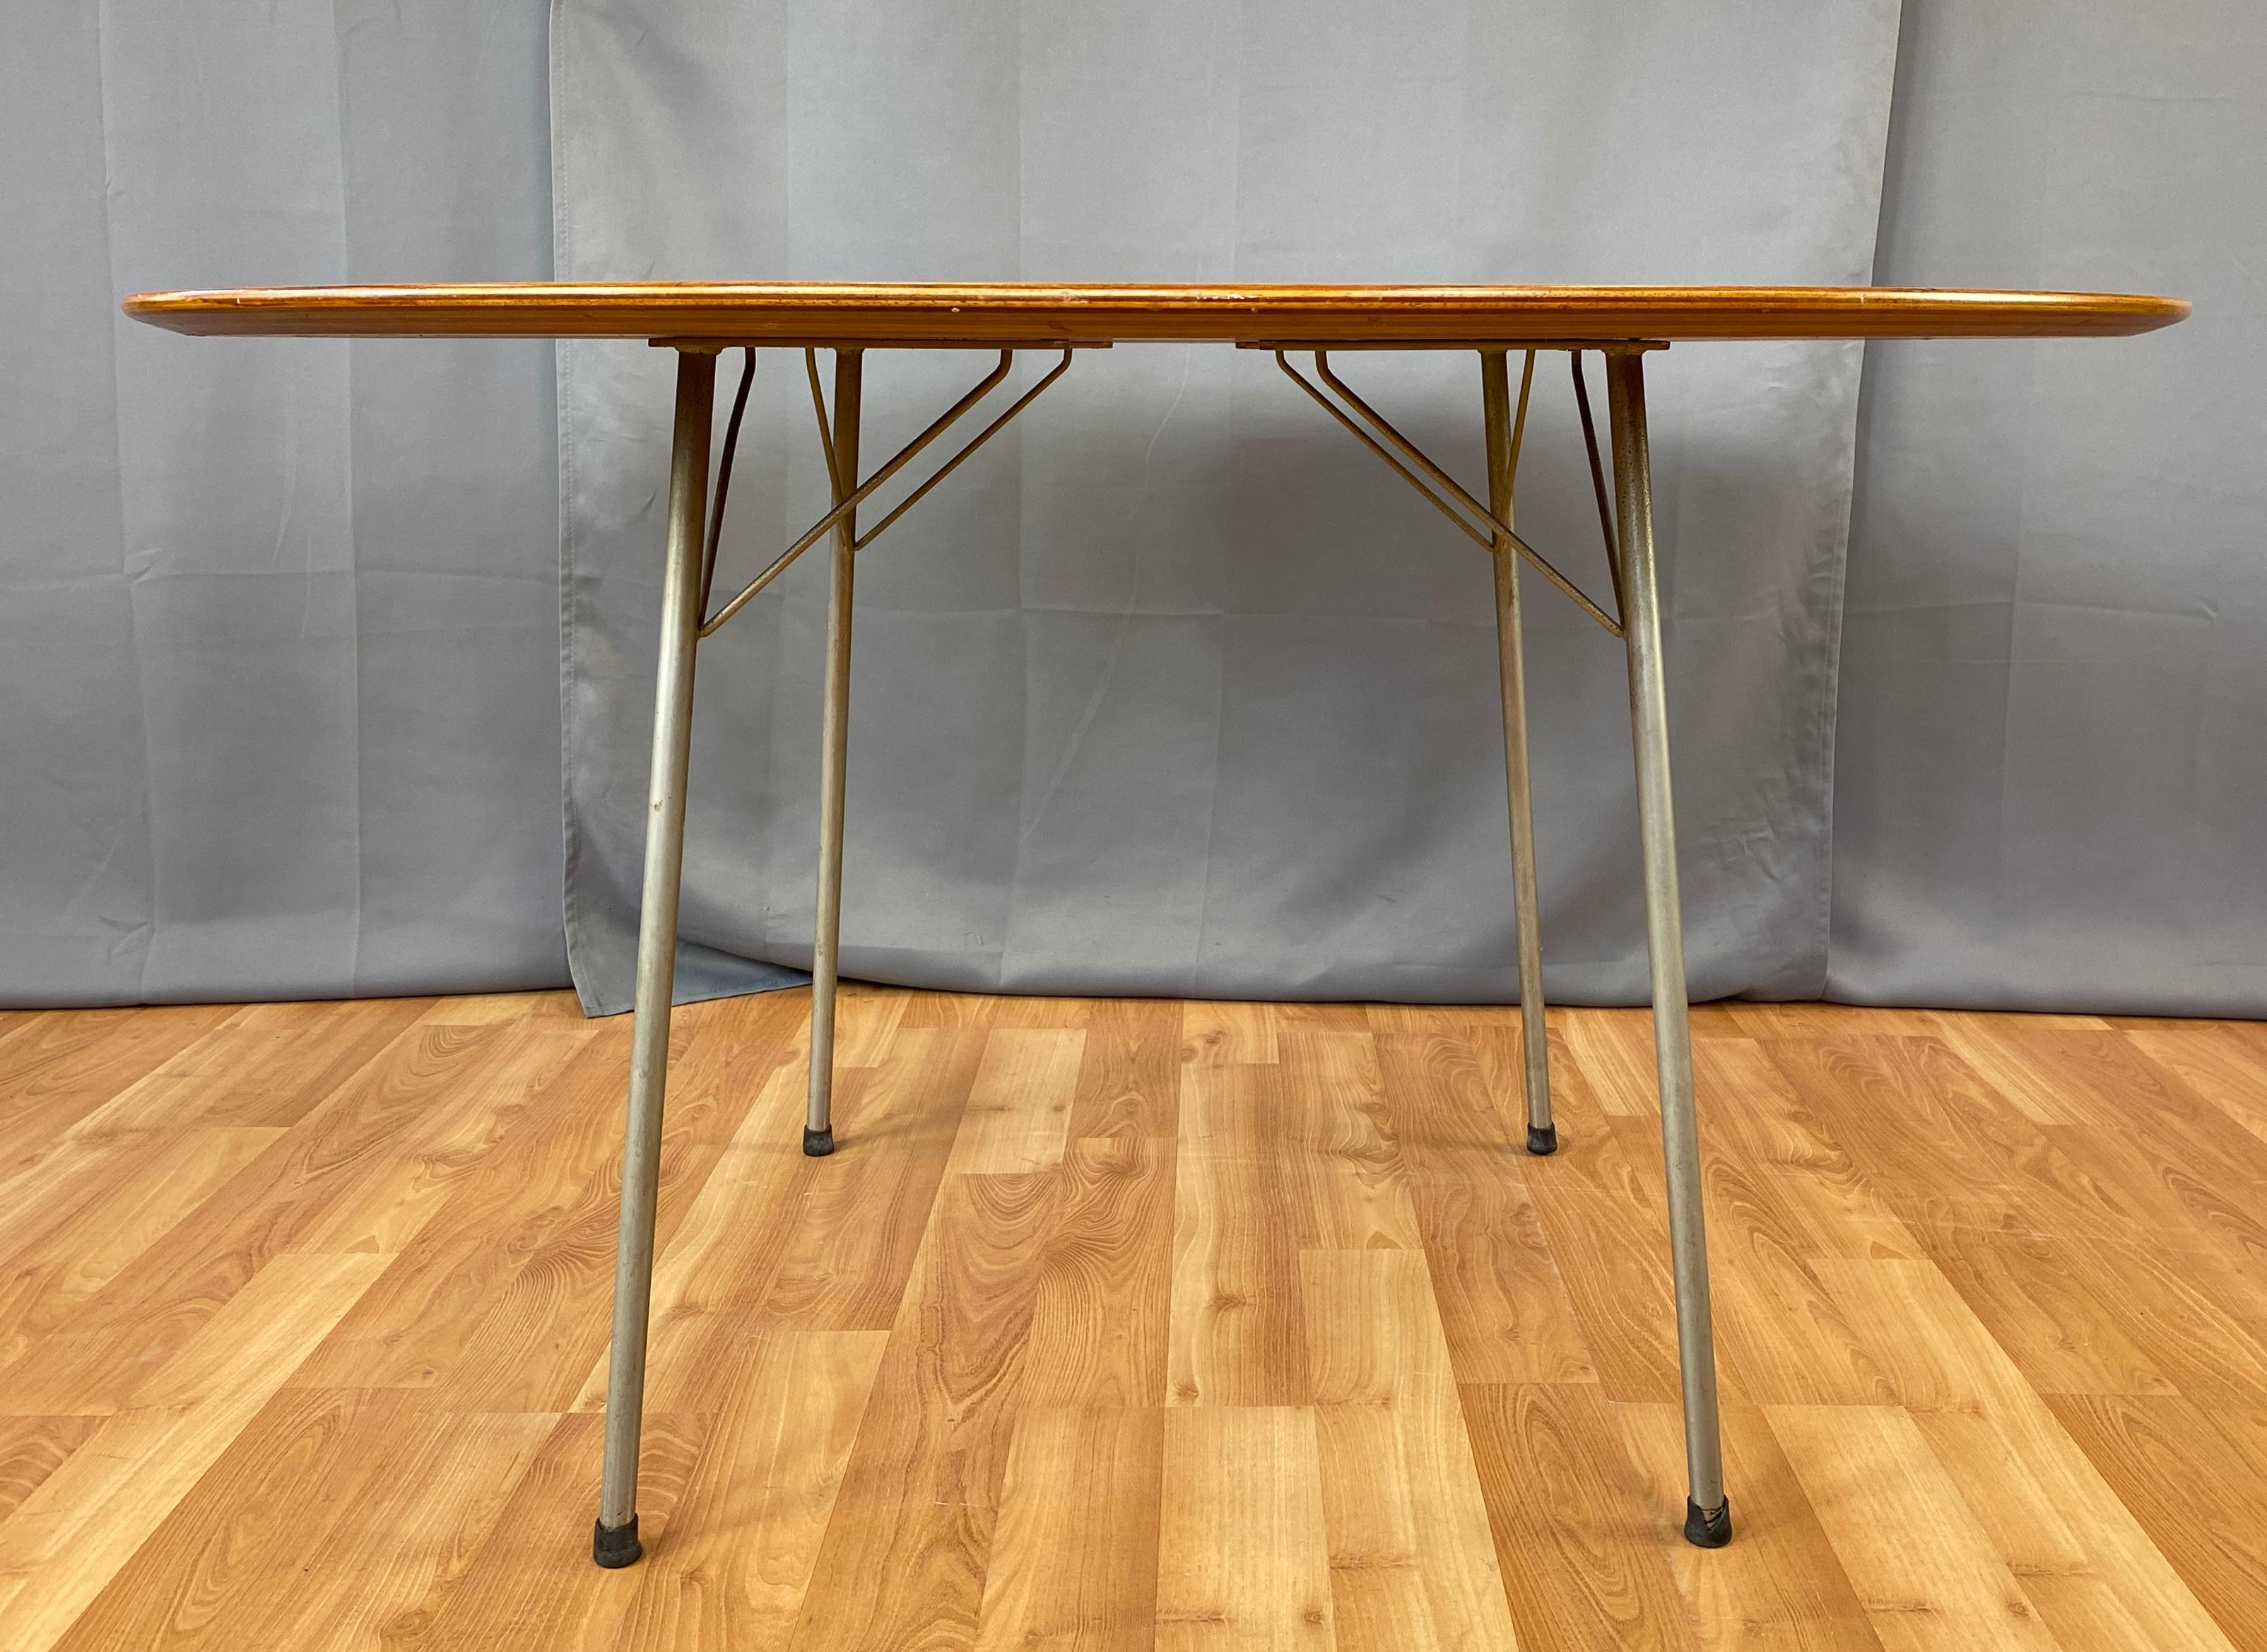 Offer here is a Arne Jacobsen for Fritz Hansen model 3600 teak dining table, first design in 1952.